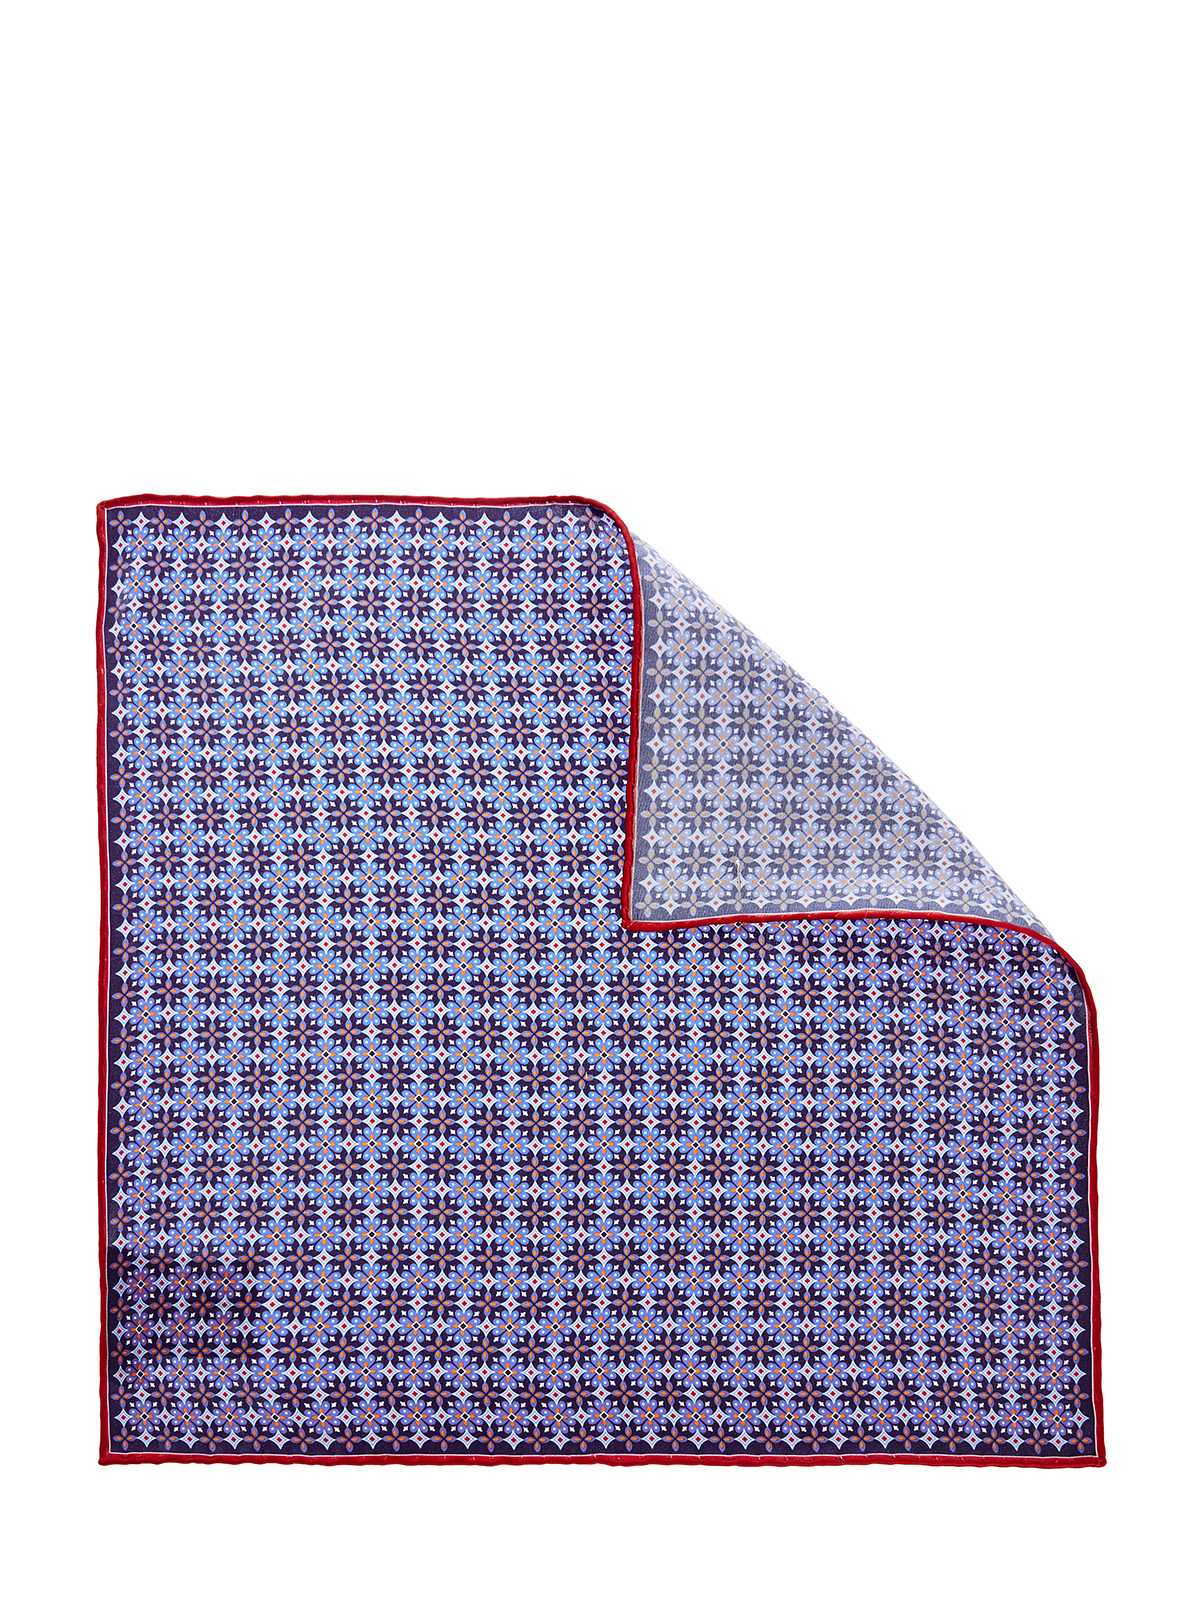 Шелковый платок-паше с набивным принтом CANALI, цвет синий, размер 40.5;41;41.5;42;42.5;43;43.5;44;45 - фото 2